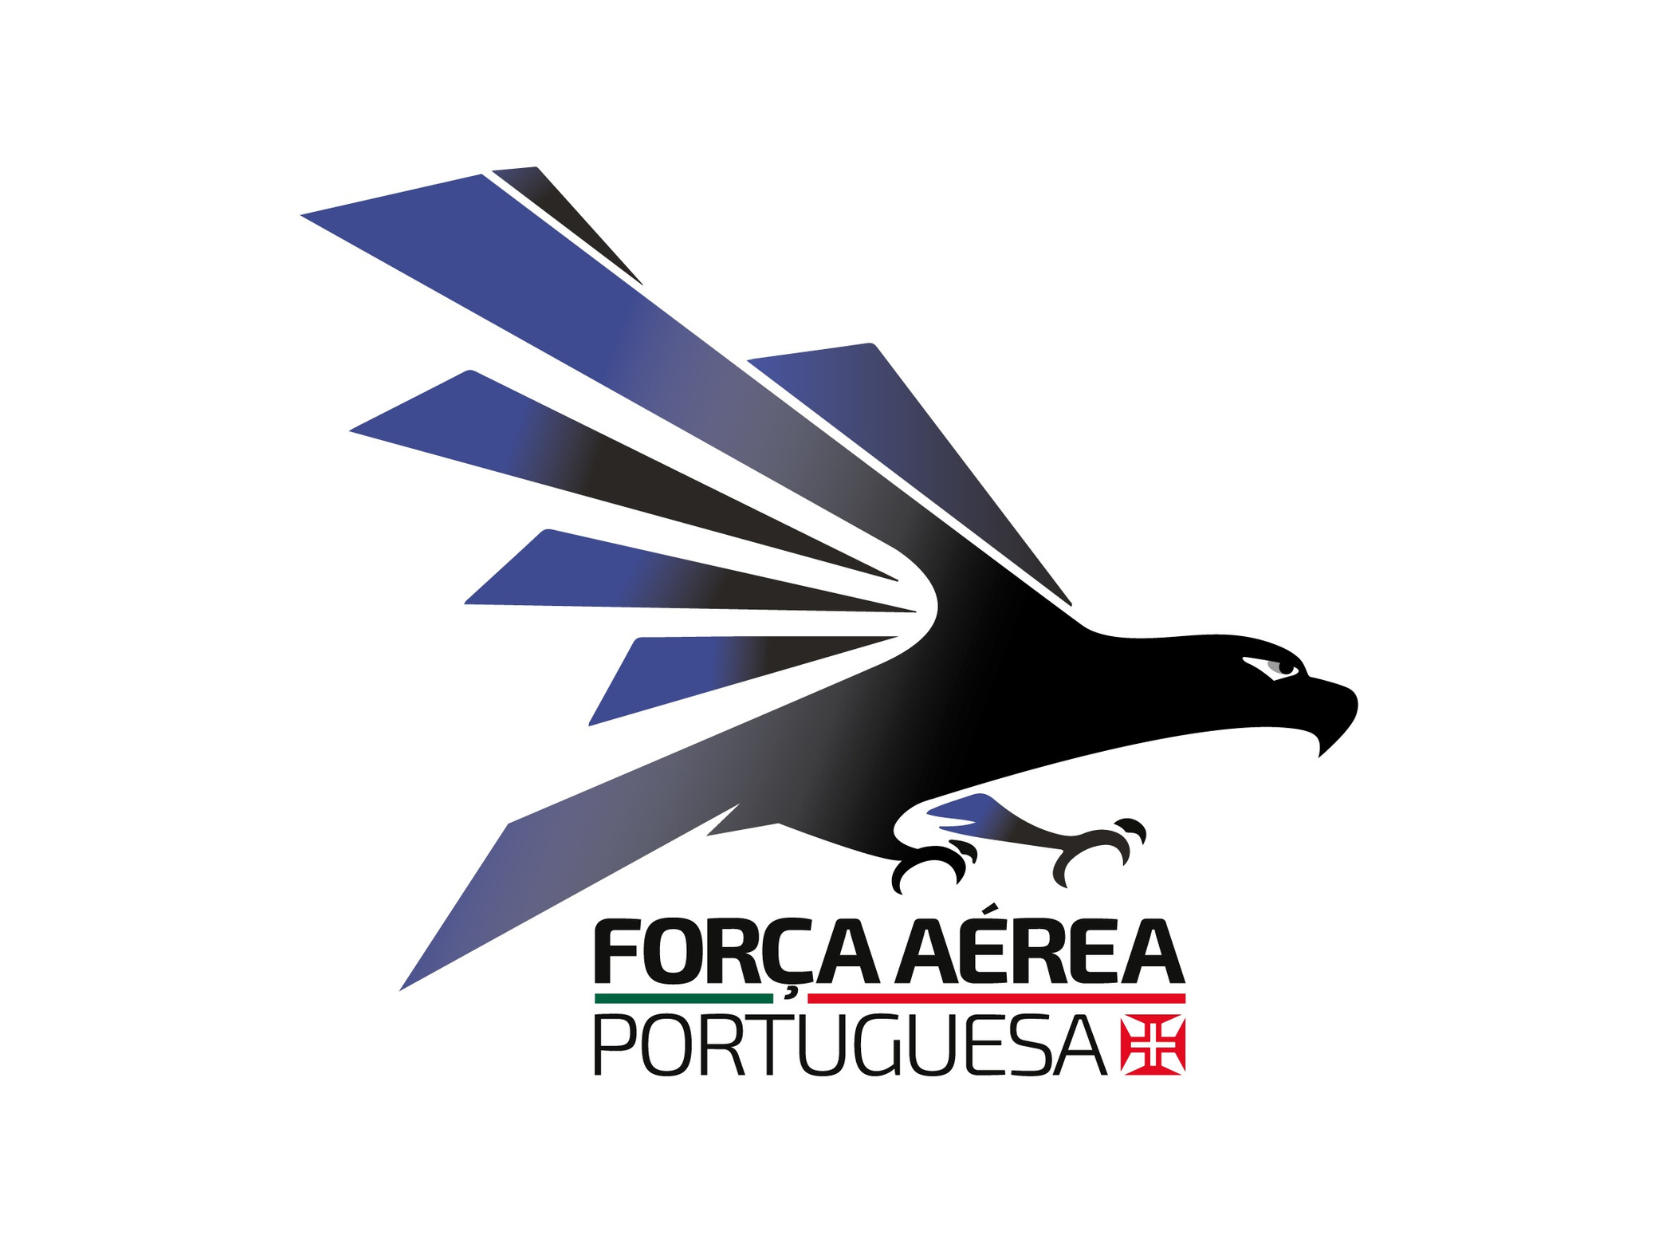 Forca Aerea Portuguesa